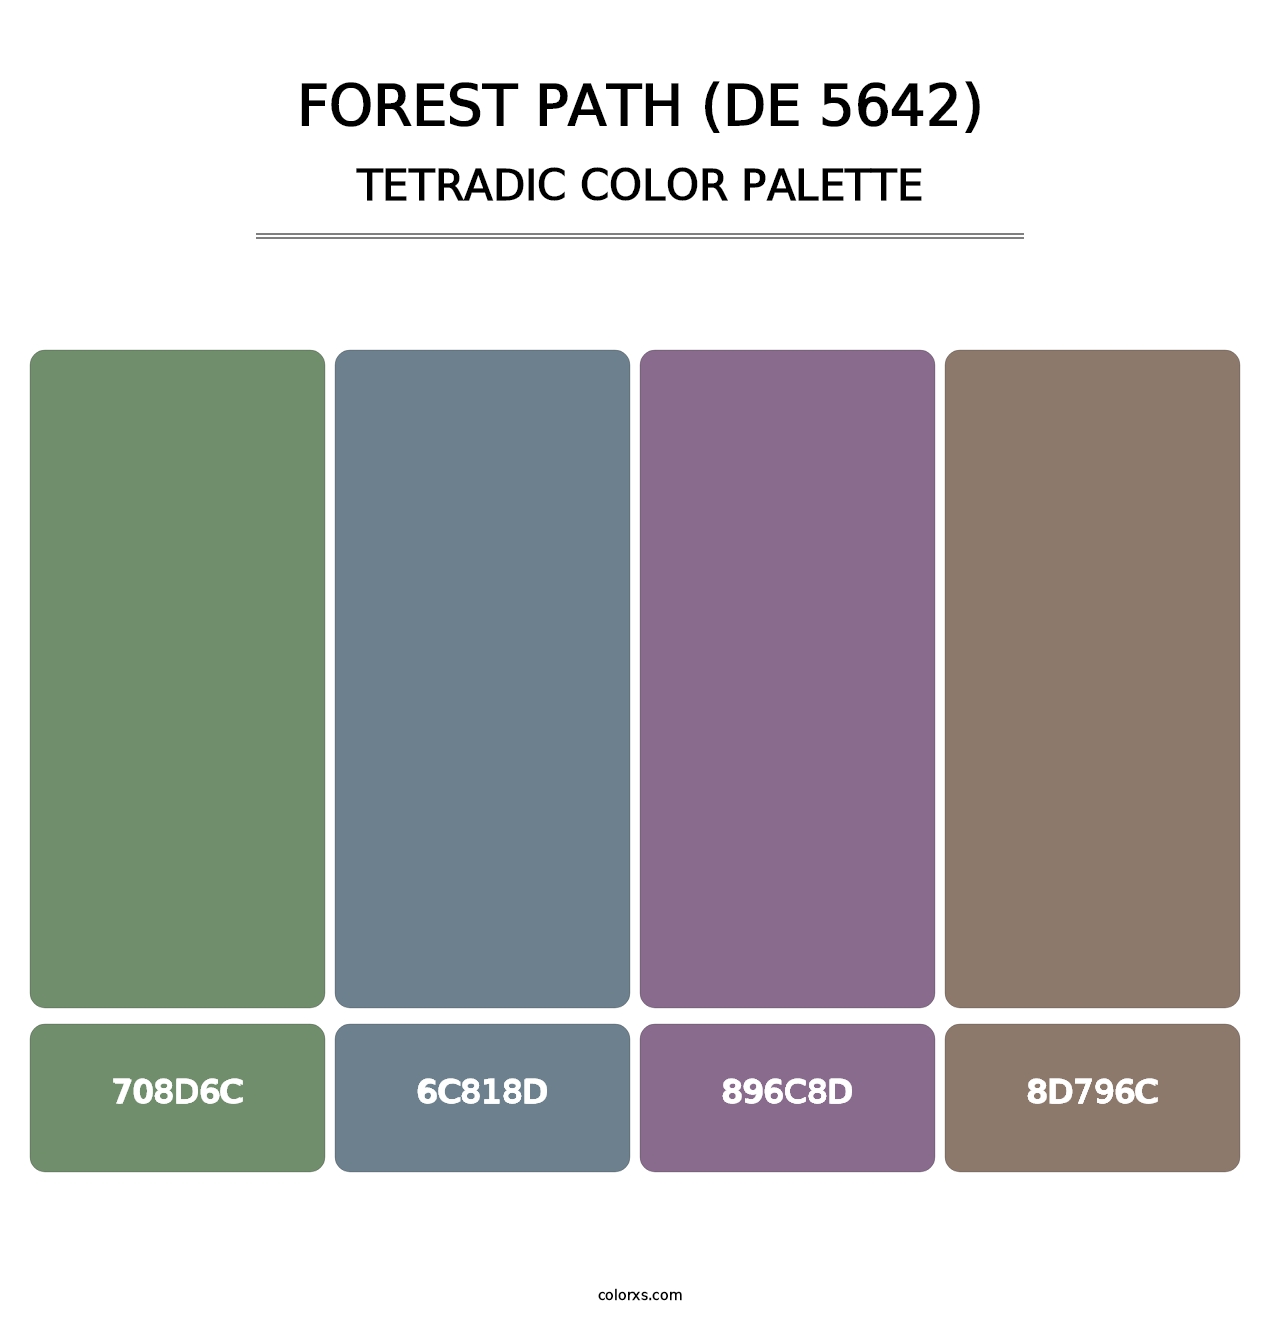 Forest Path (DE 5642) - Tetradic Color Palette